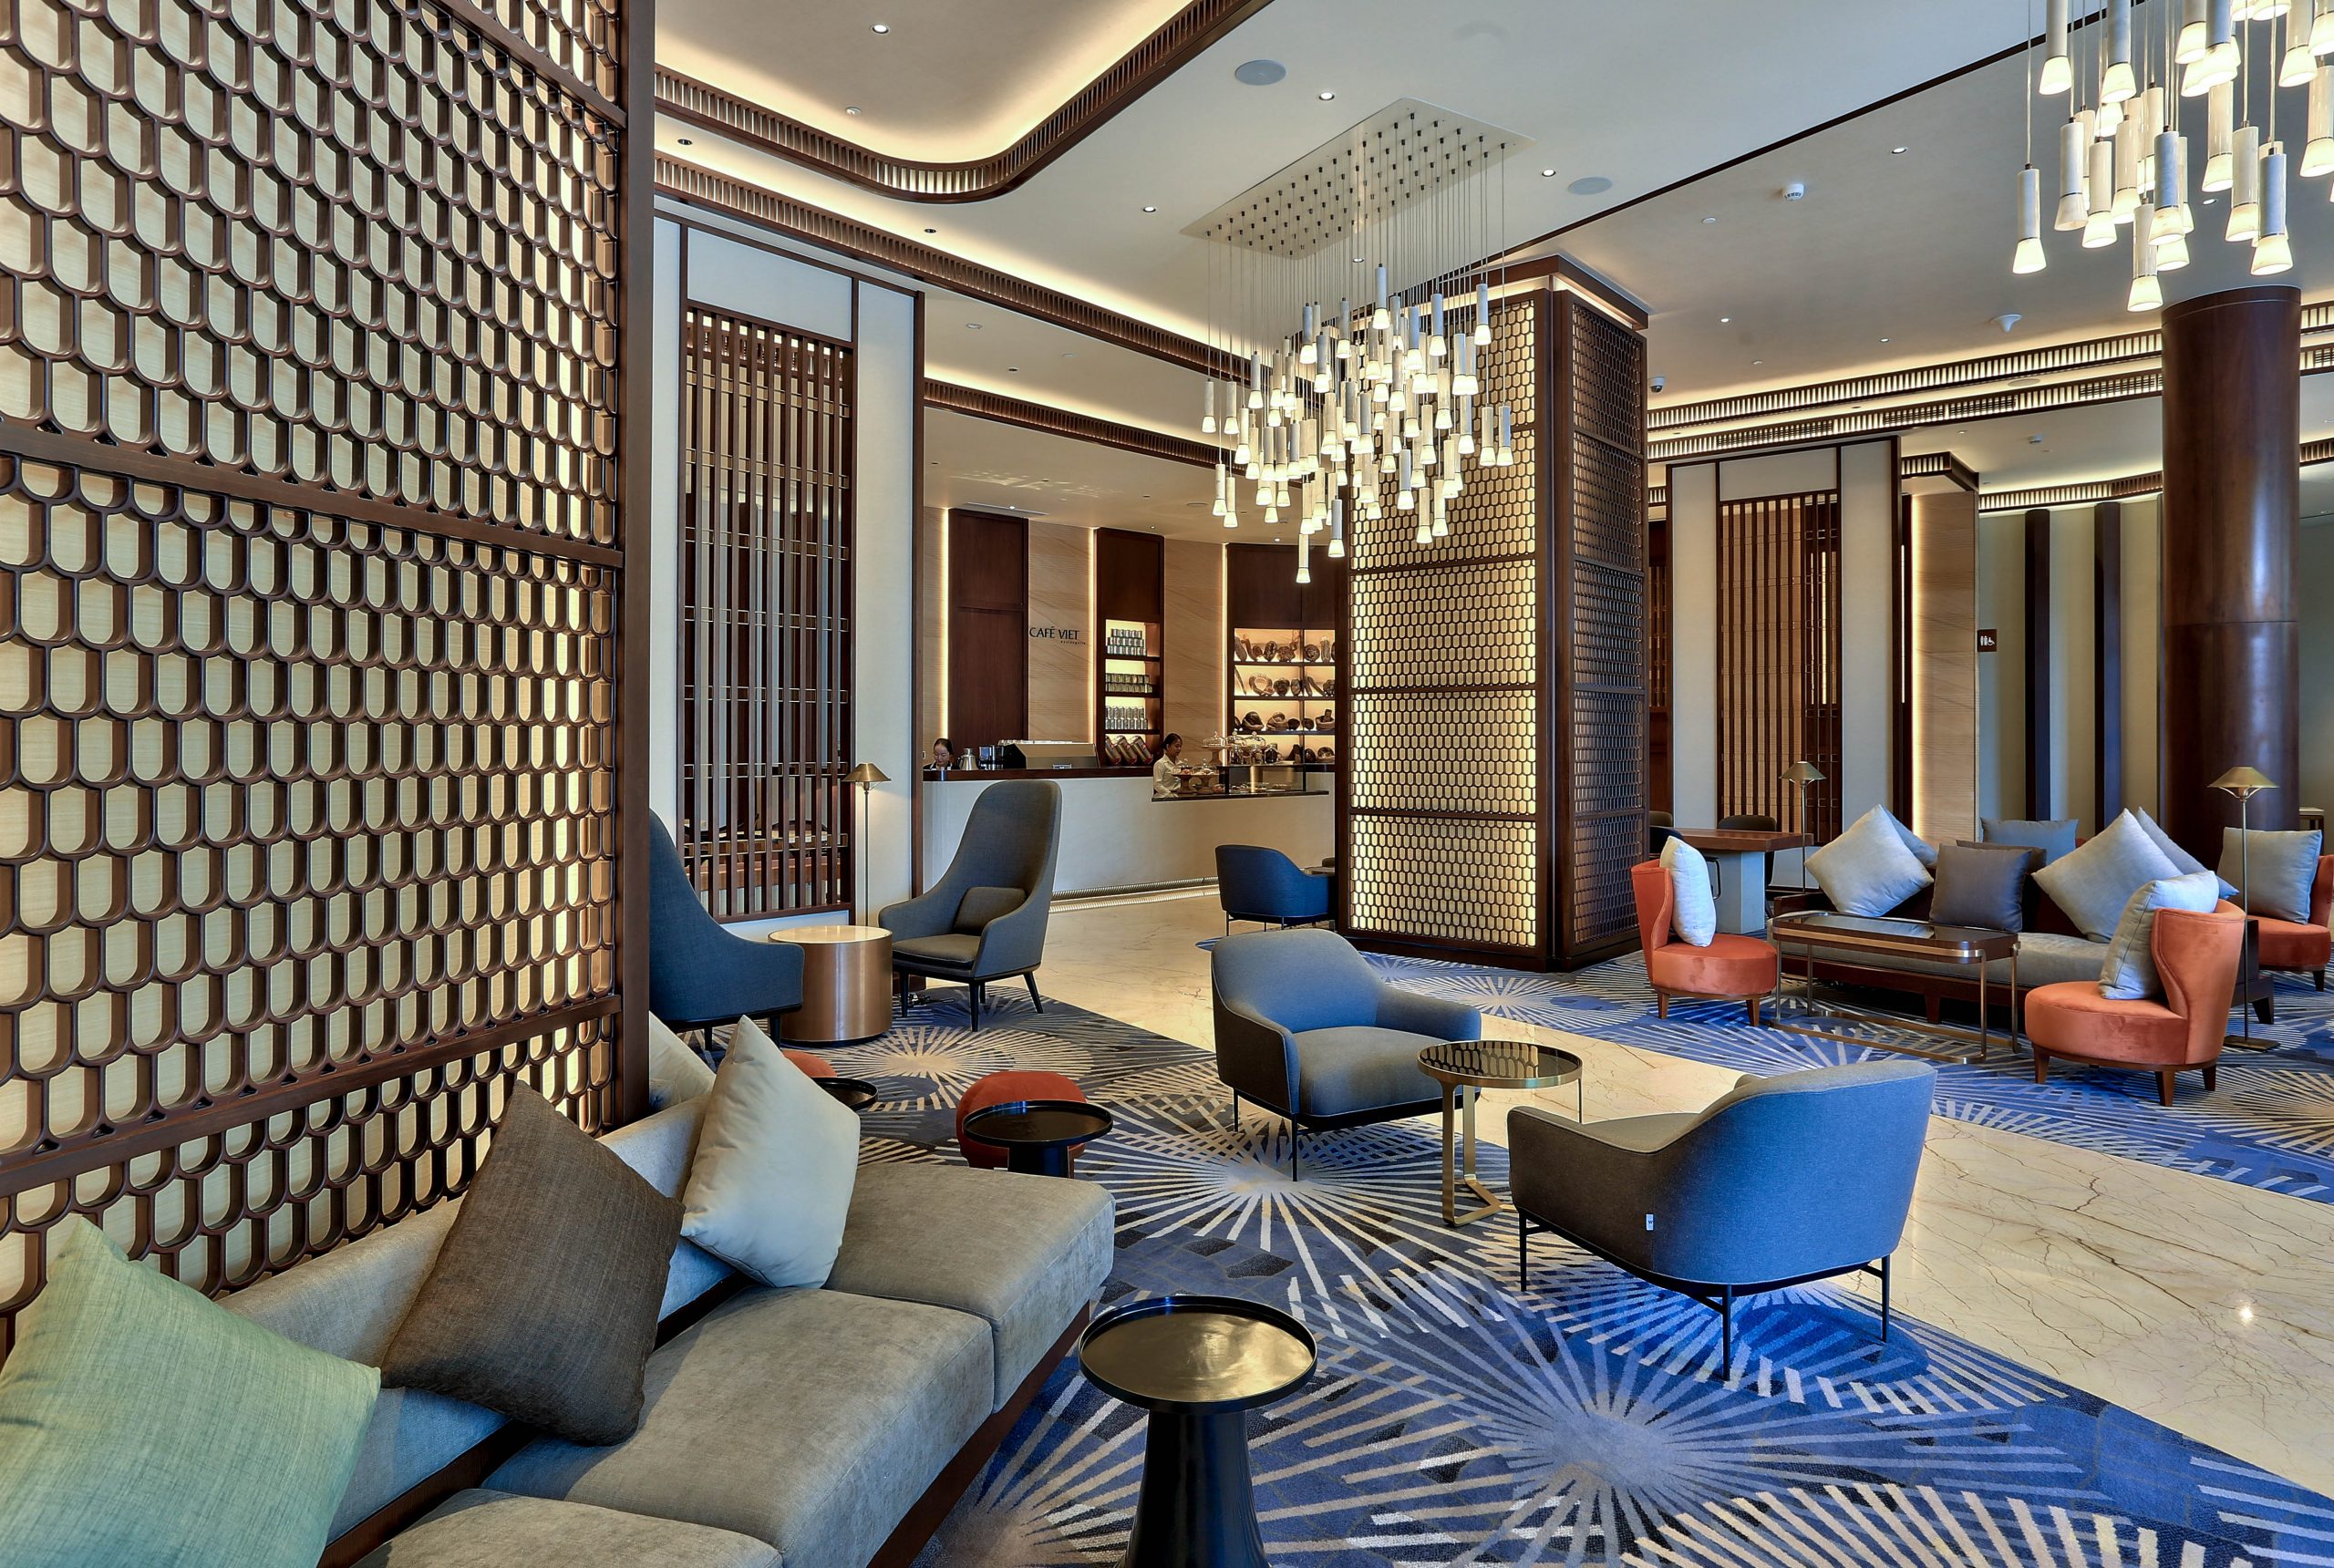 Hilton Đà Nẵng - Đỉnh cao về đẳng cấp nghỉ dưỡng